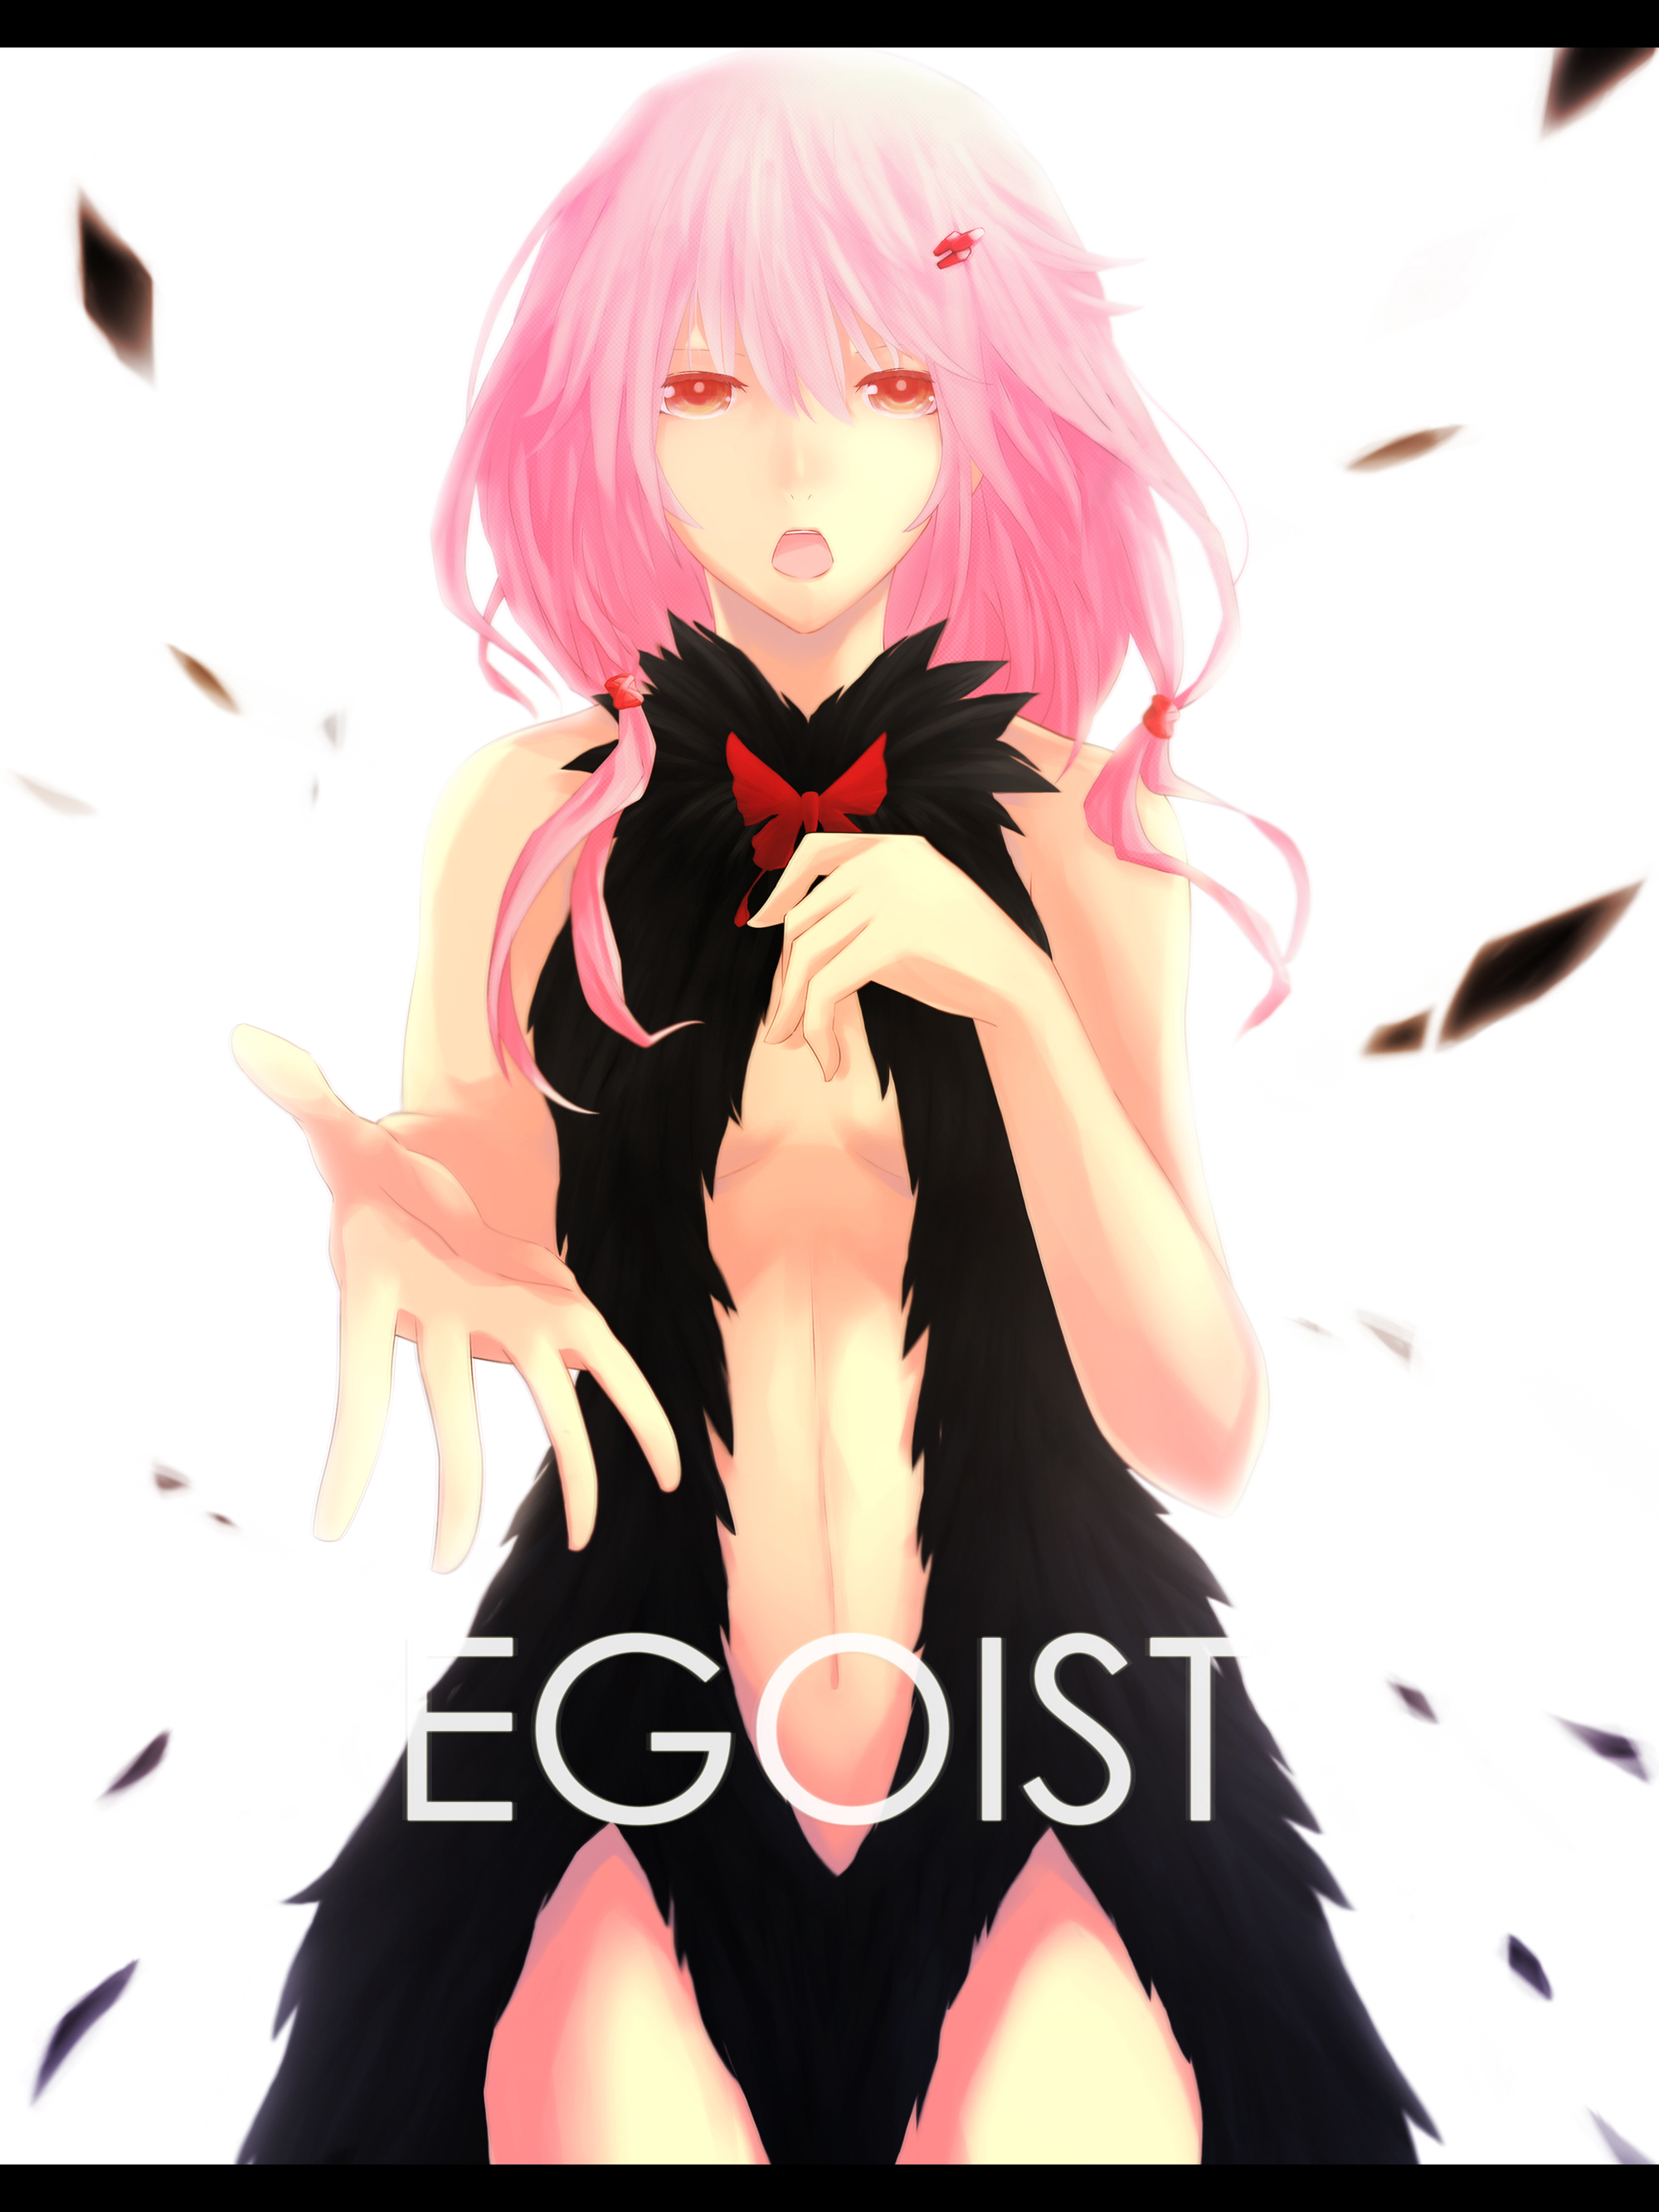 EGOIST-EGOISTinori_yuzuriha